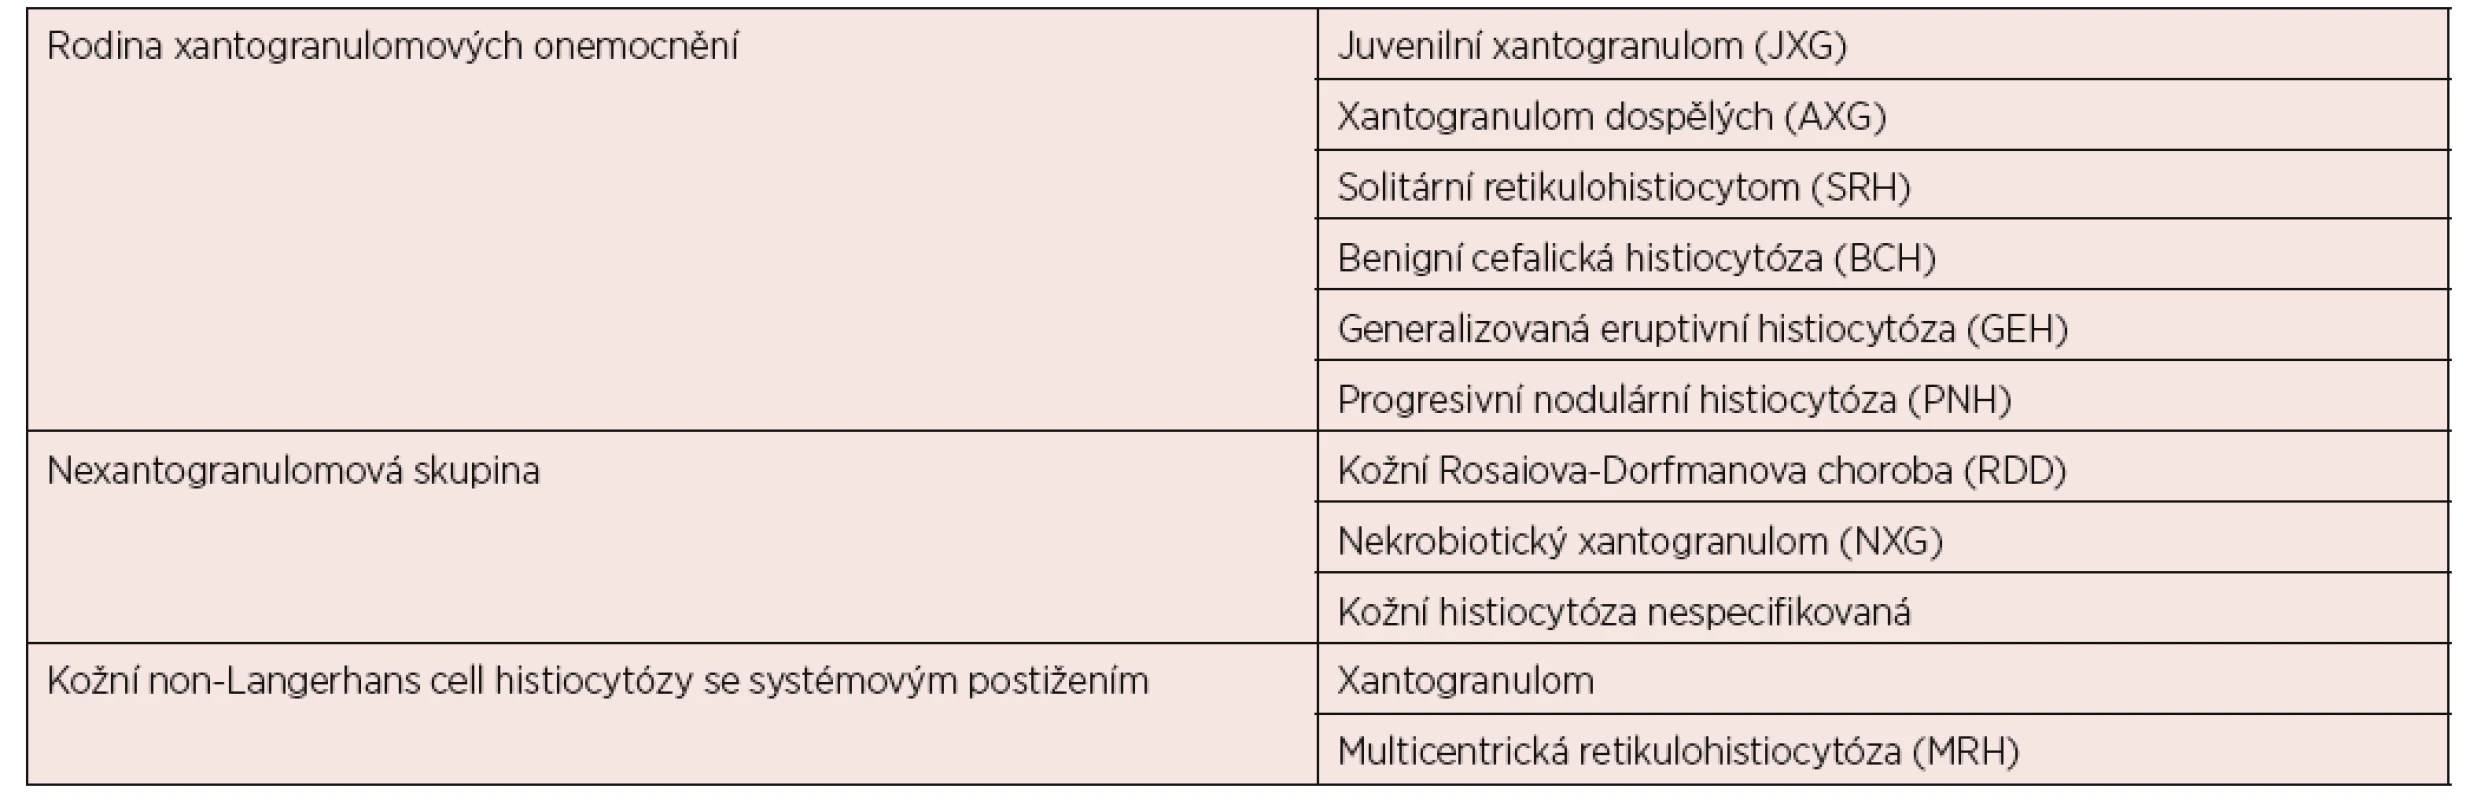 Non-LCH histiocytózy kůže a sliznic podle klasifikace Histiocyte Society [2]